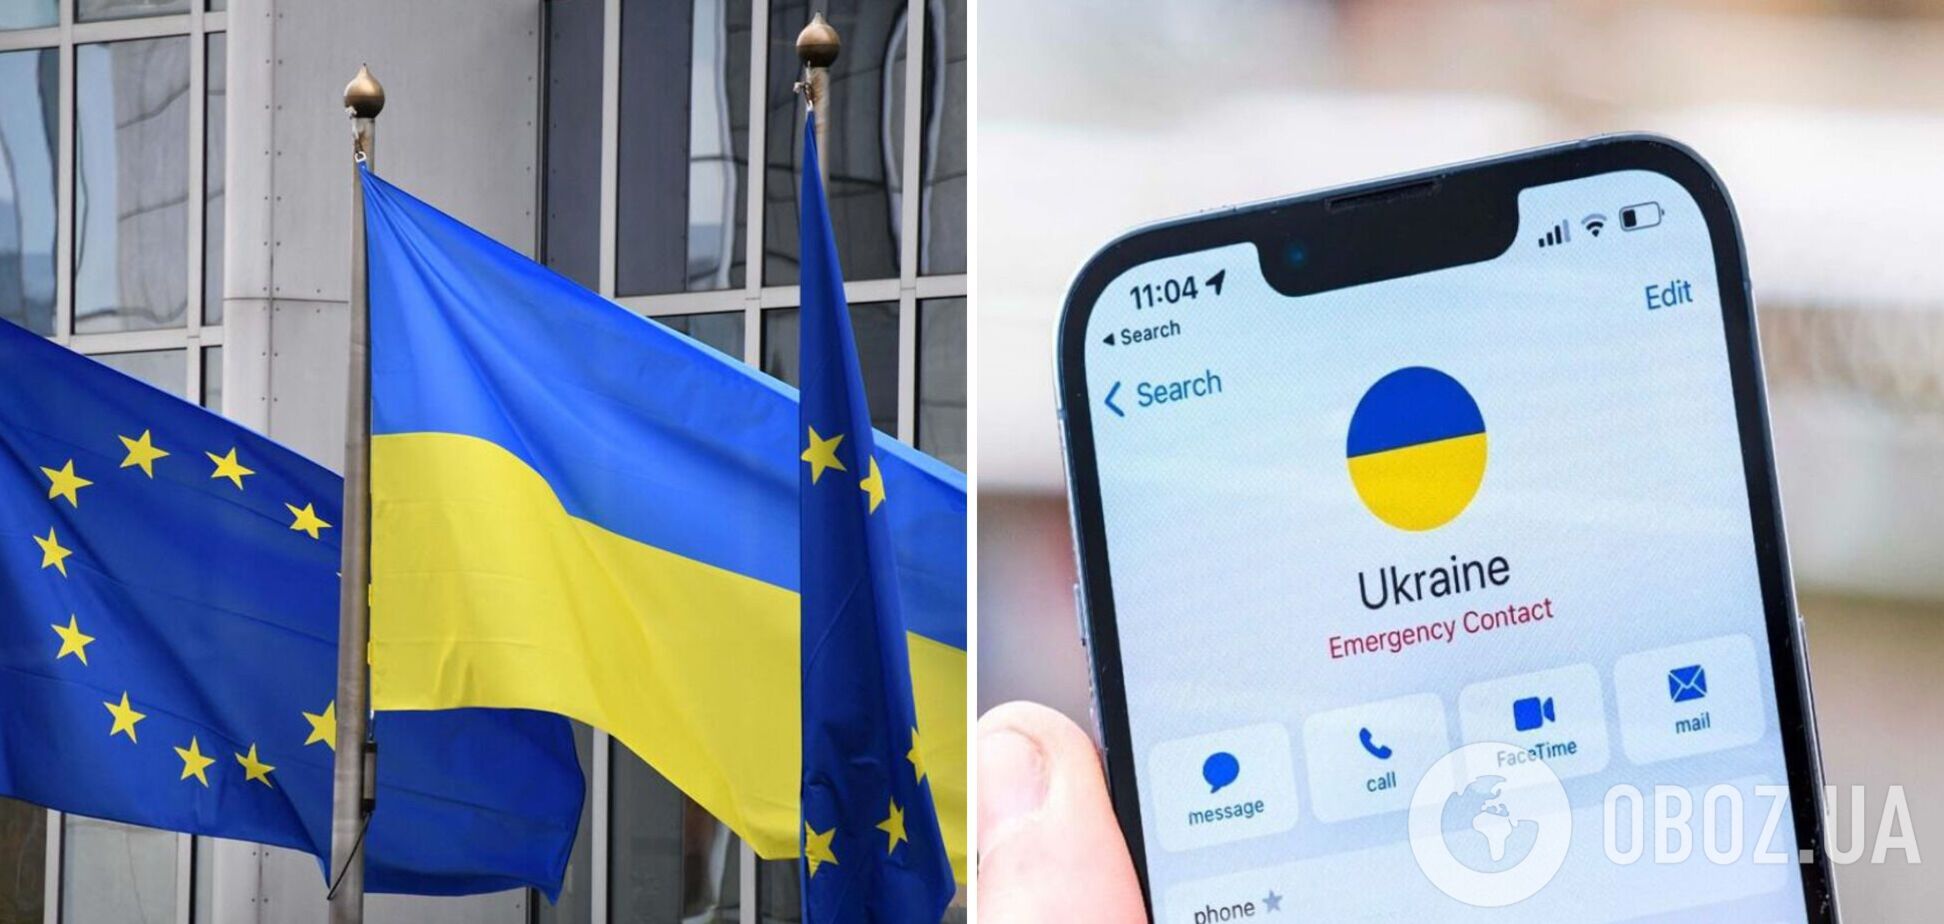 Украина может войти в зону роуминга ЕС